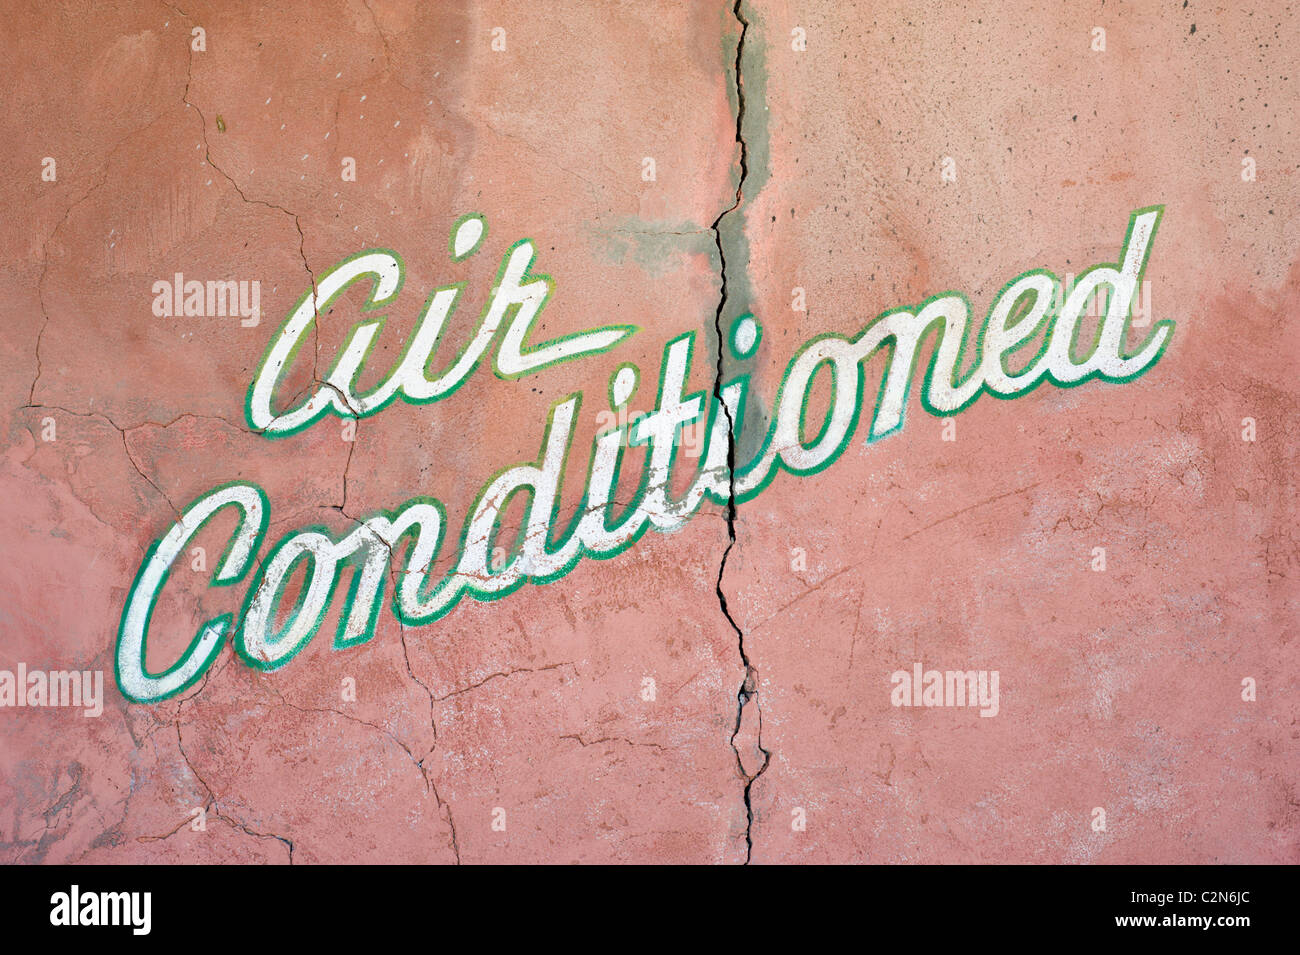 Segno sul vecchio muro Adobe annuncia cool indoor comfort; una tregua dal deserto di calore in Carrizozo, Nuovo Messico. Foto Stock